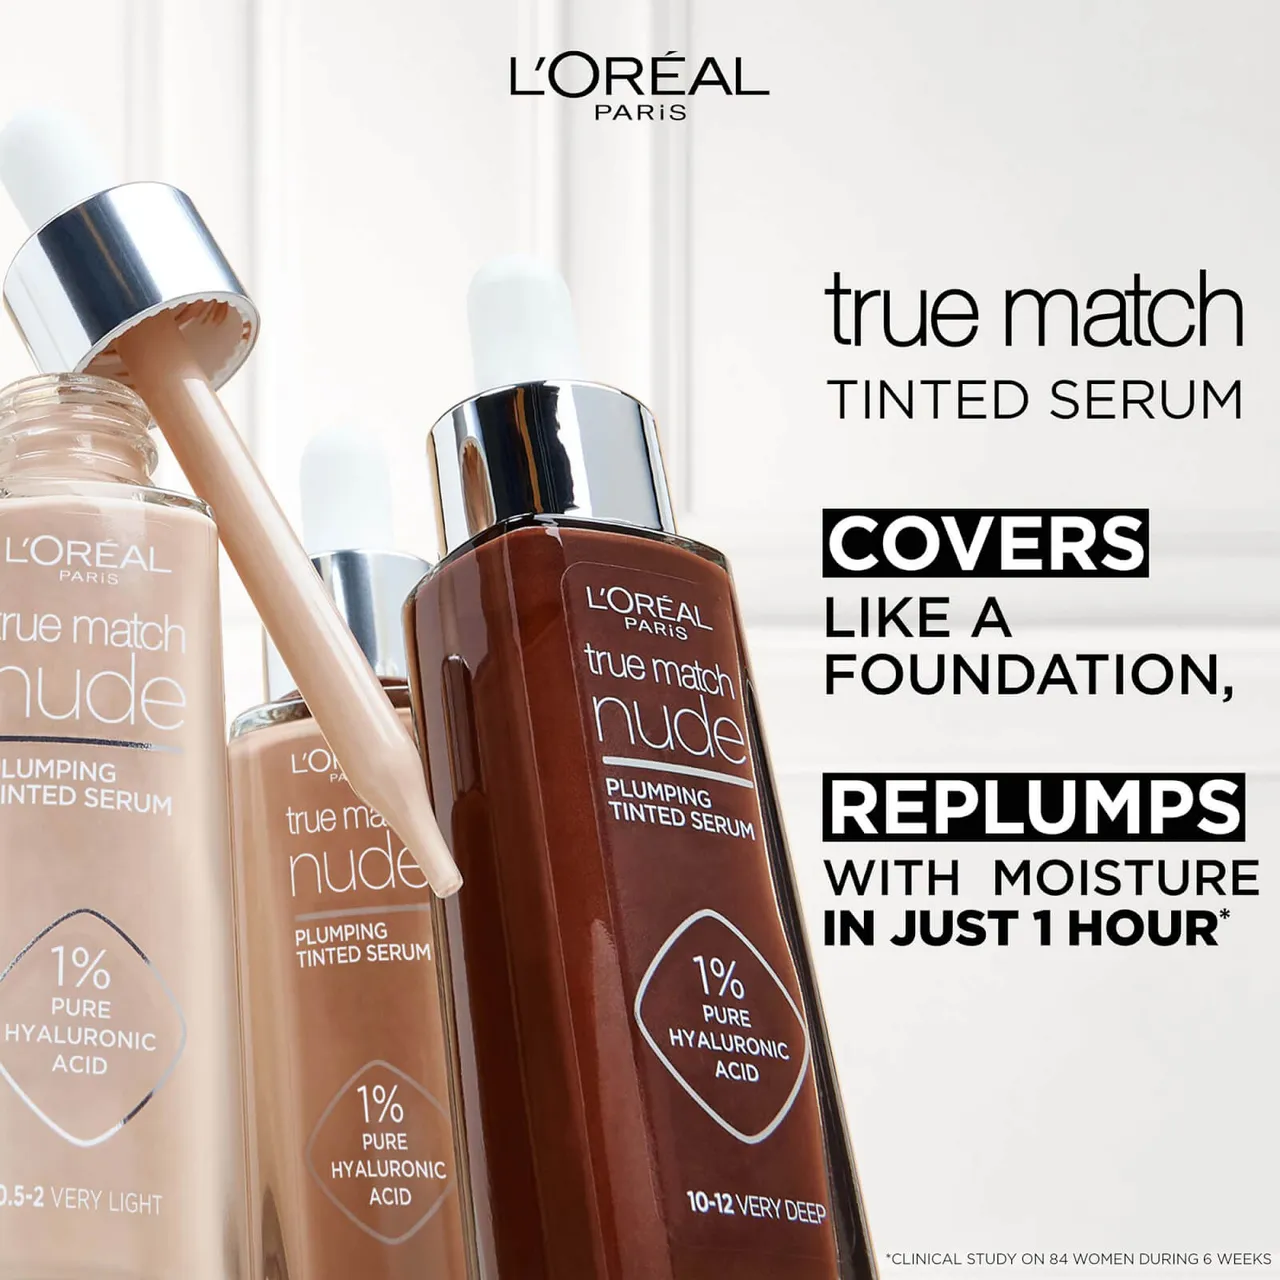 L'Oréal Paris True Match Nude Plumping Tinted Serum (Various Shades) - 6-7 Tan